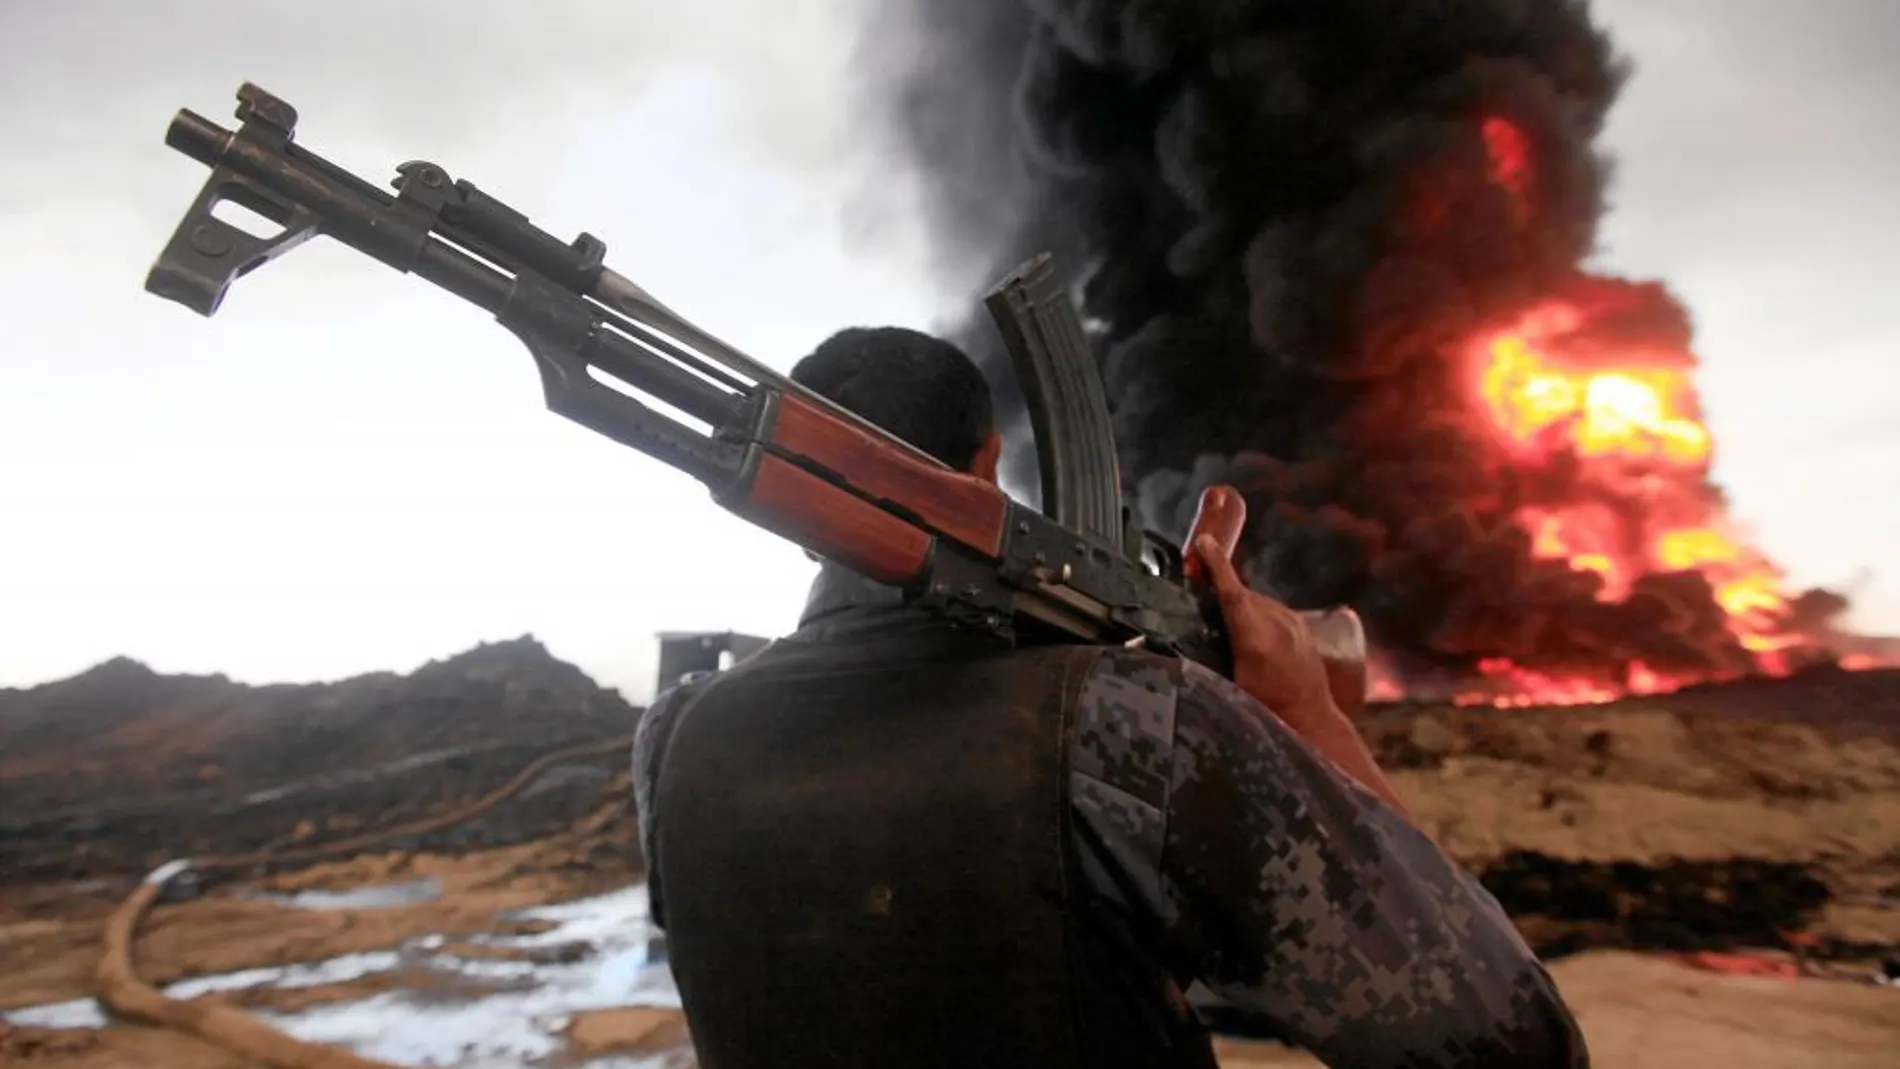 ENTRE LLAMAS. Un soldado contempla en Irak cómo arde un pozo de petróleo. El Estado Islámico provocó el incendio este año